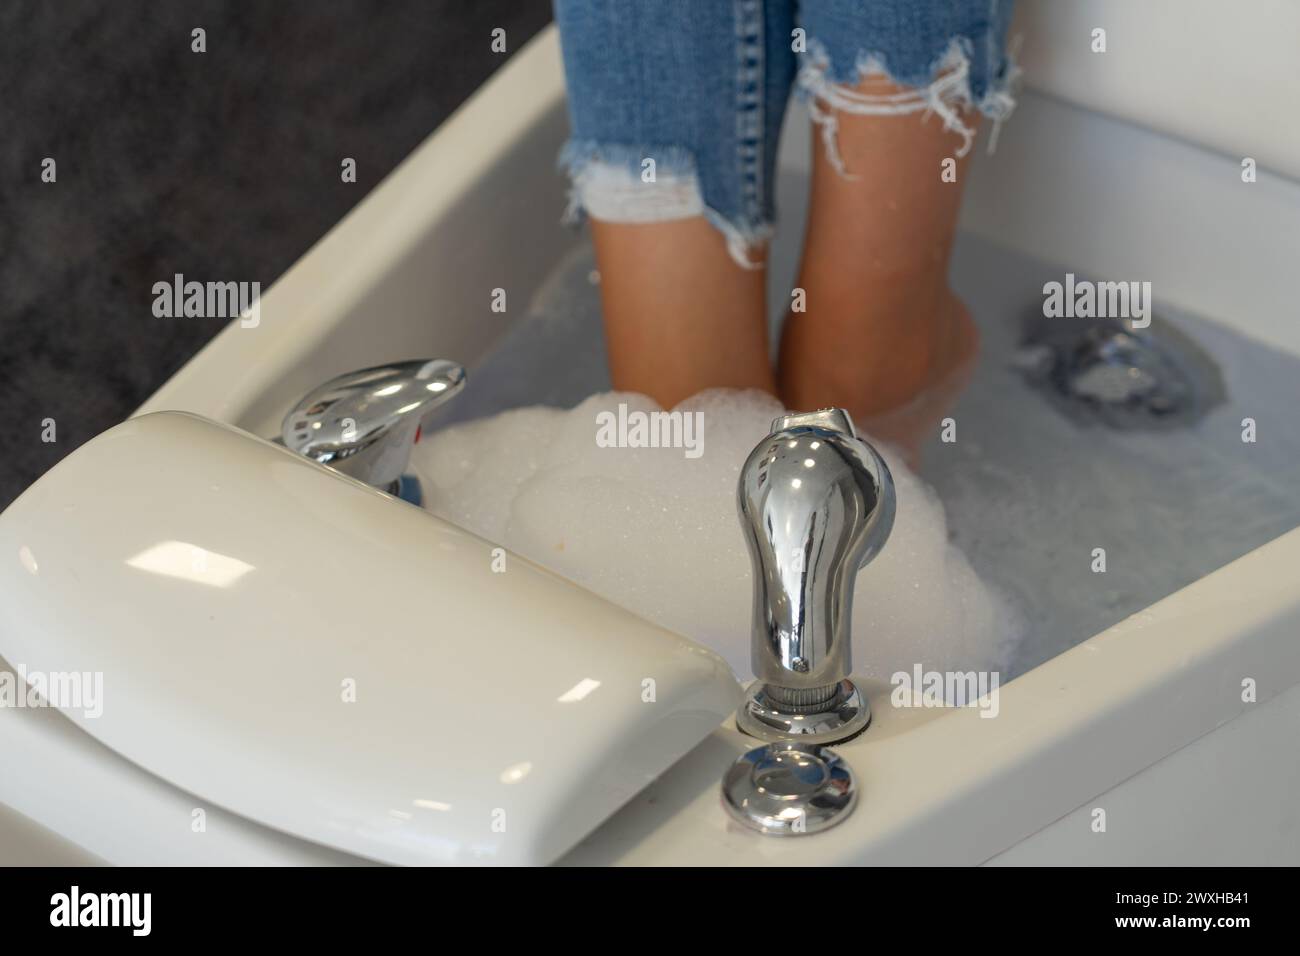 Les pieds des femmes dans une baignoire pédicure dans un centre de beauté Banque D'Images